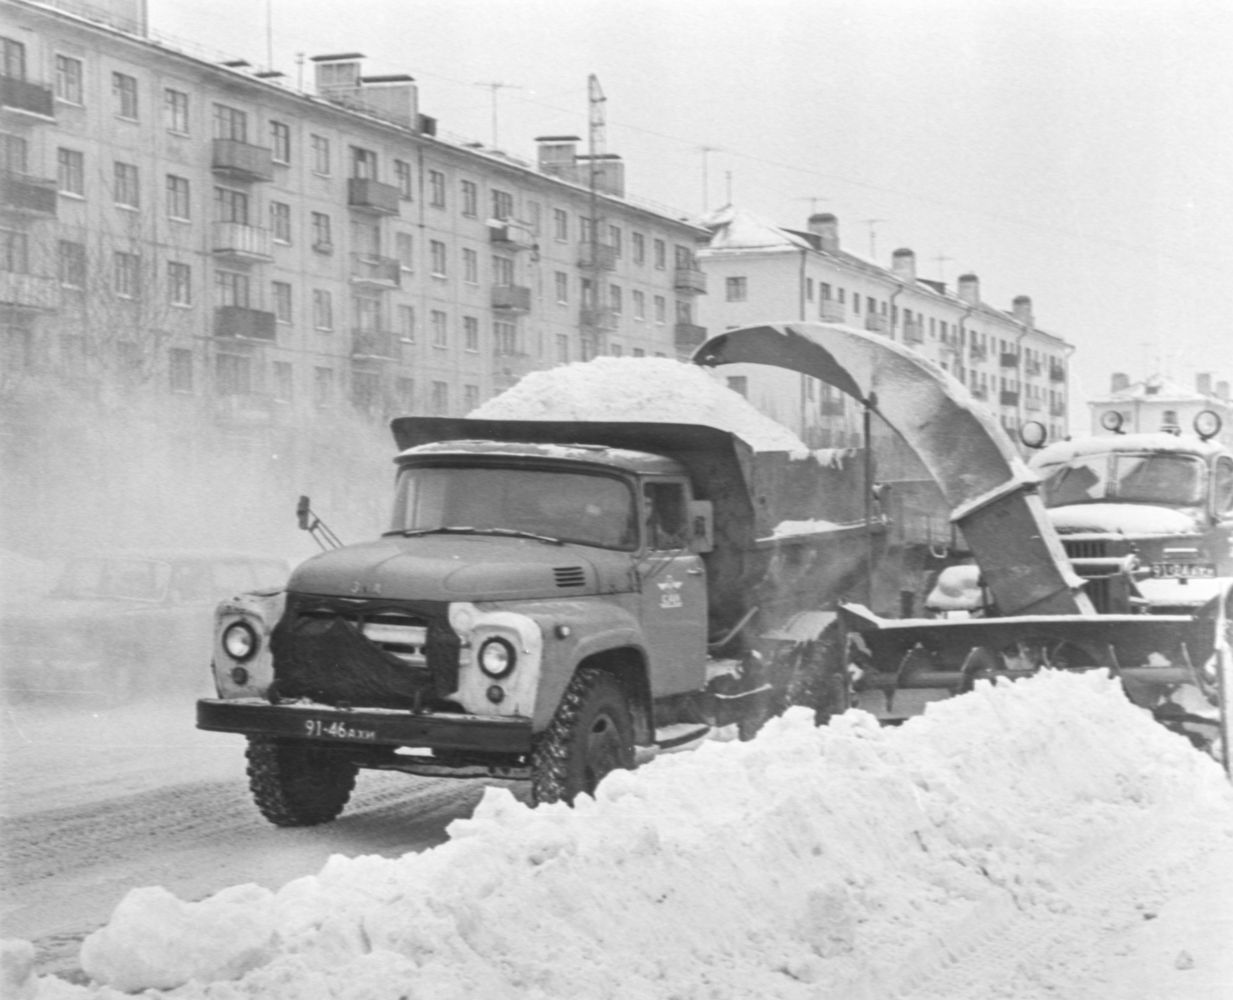 Снегоуборочная техника на улицах города | Транспорт. 1981 г., г.Северодвинск. Фото #C15224.